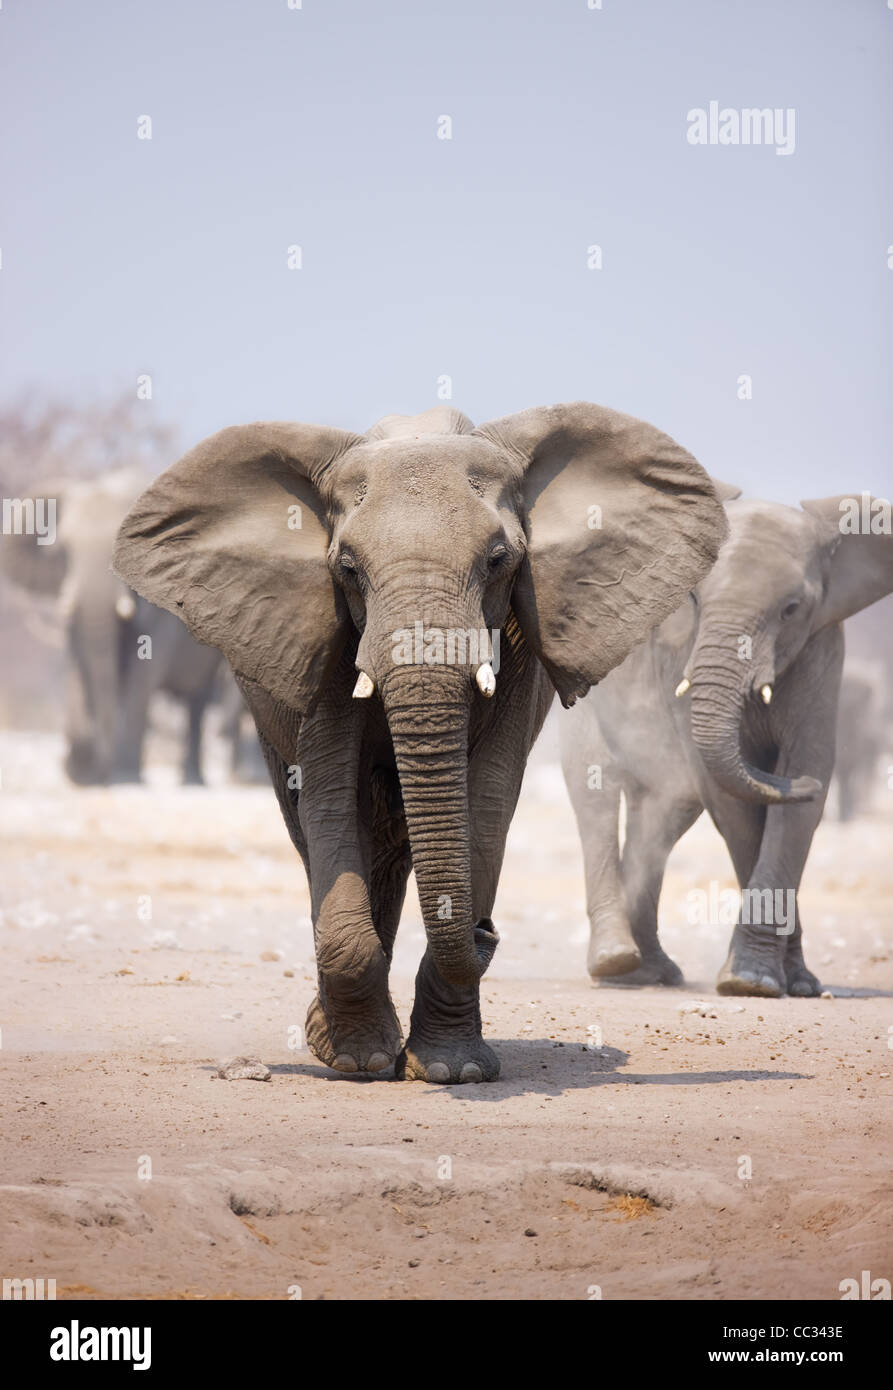 Elefant nähert sich über staubigen Sand mit Herde nach im Hintergrund Stockfoto